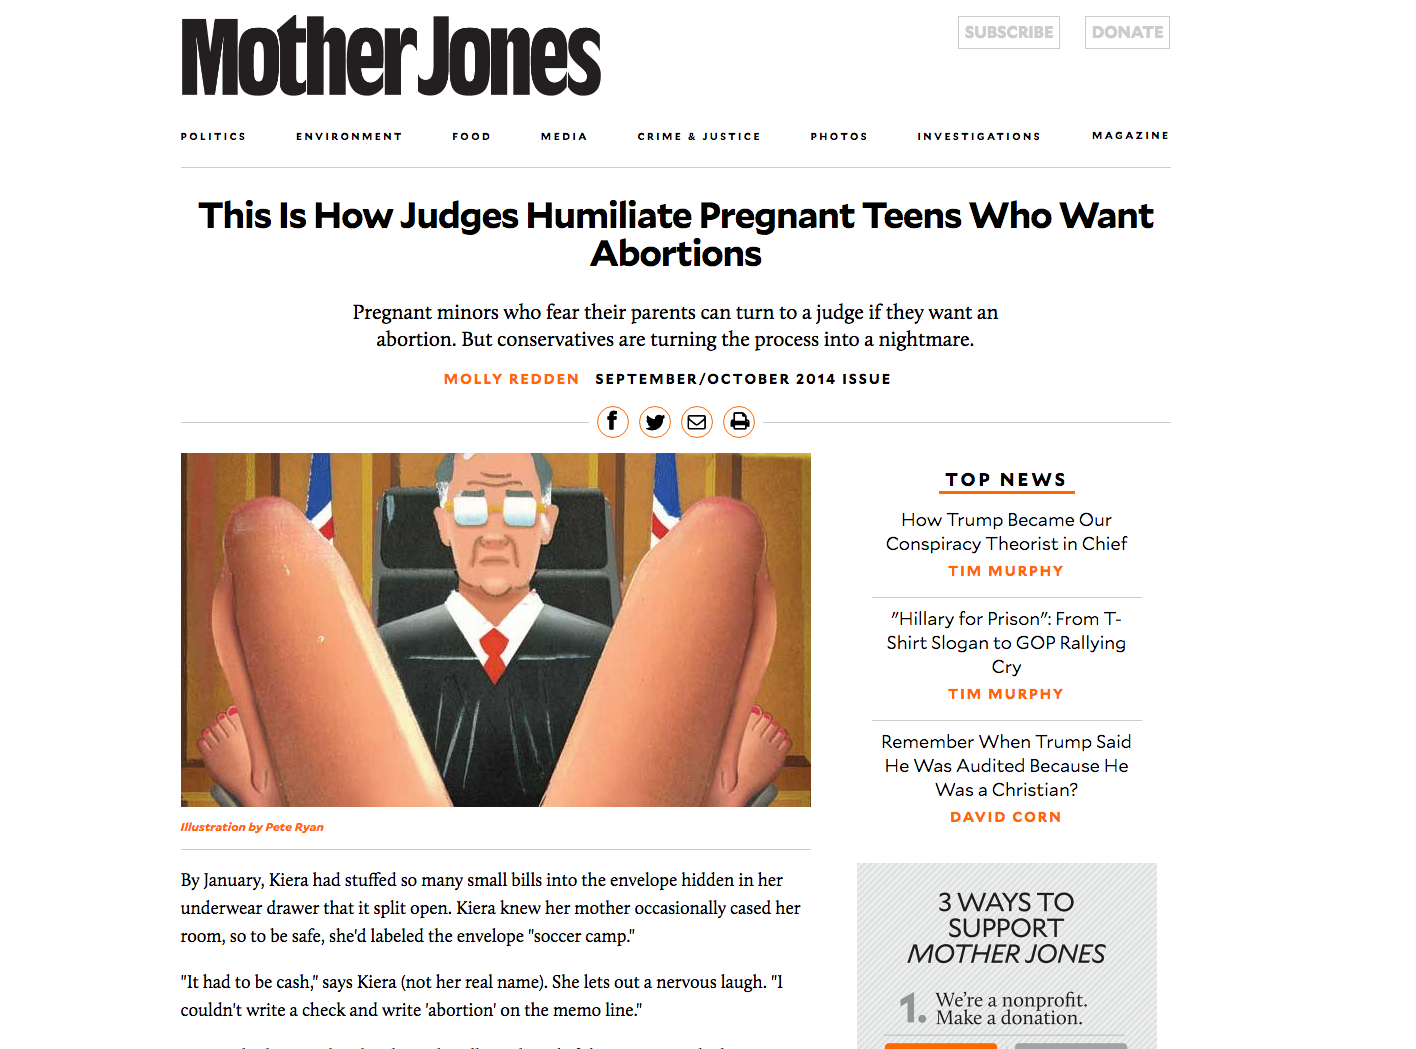 mother-jones-judges-humiliate-teens-abortions.png